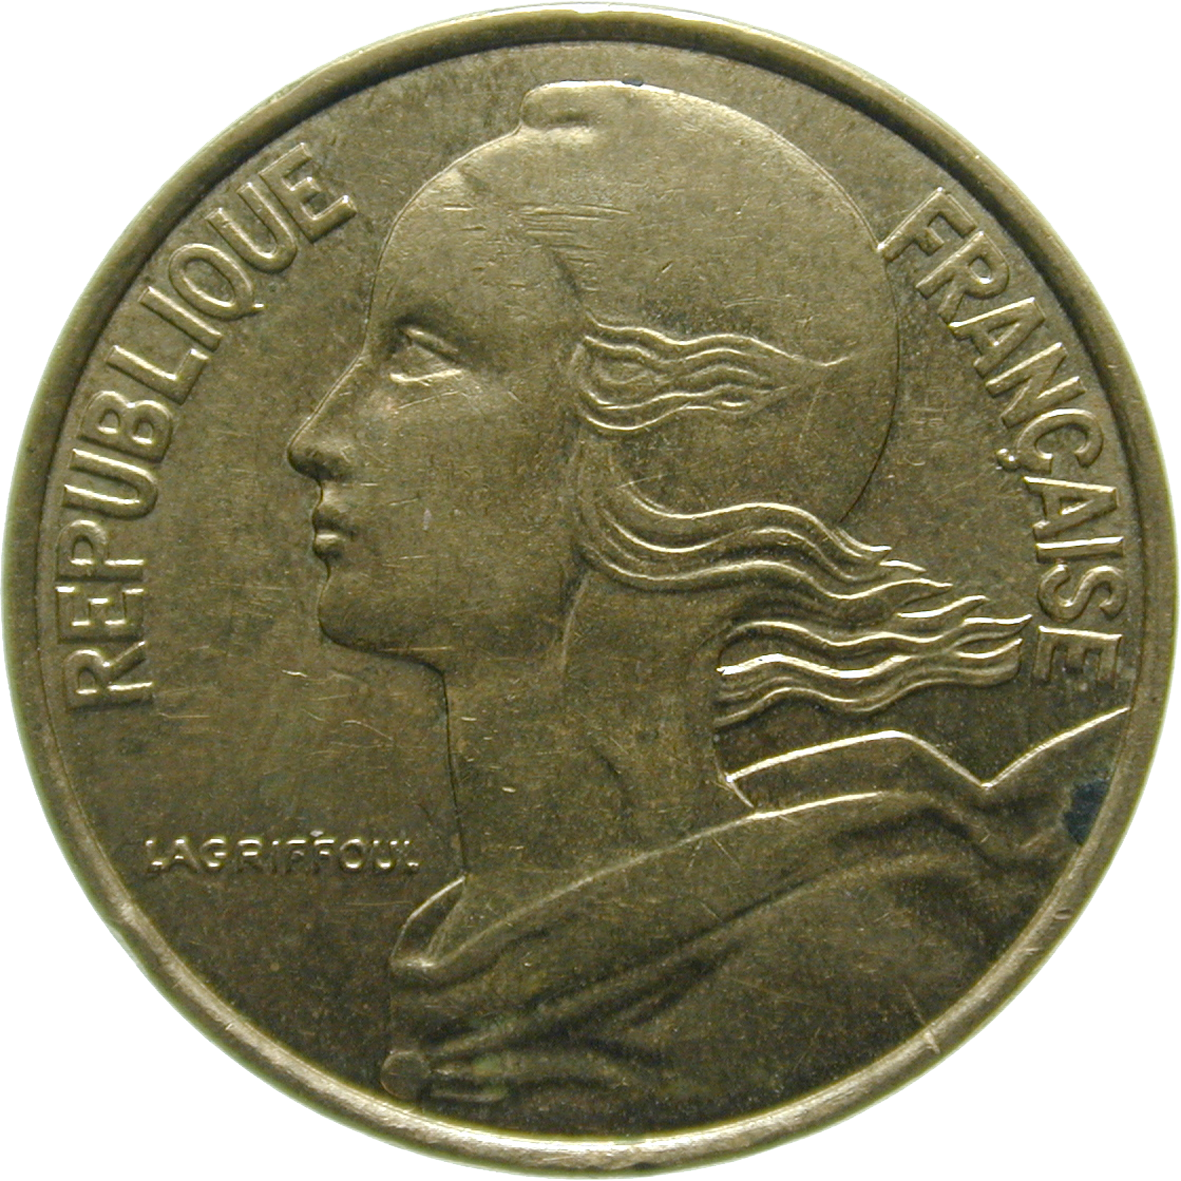 Republik Frankreich, 10 Centimes 1997 (obverse)